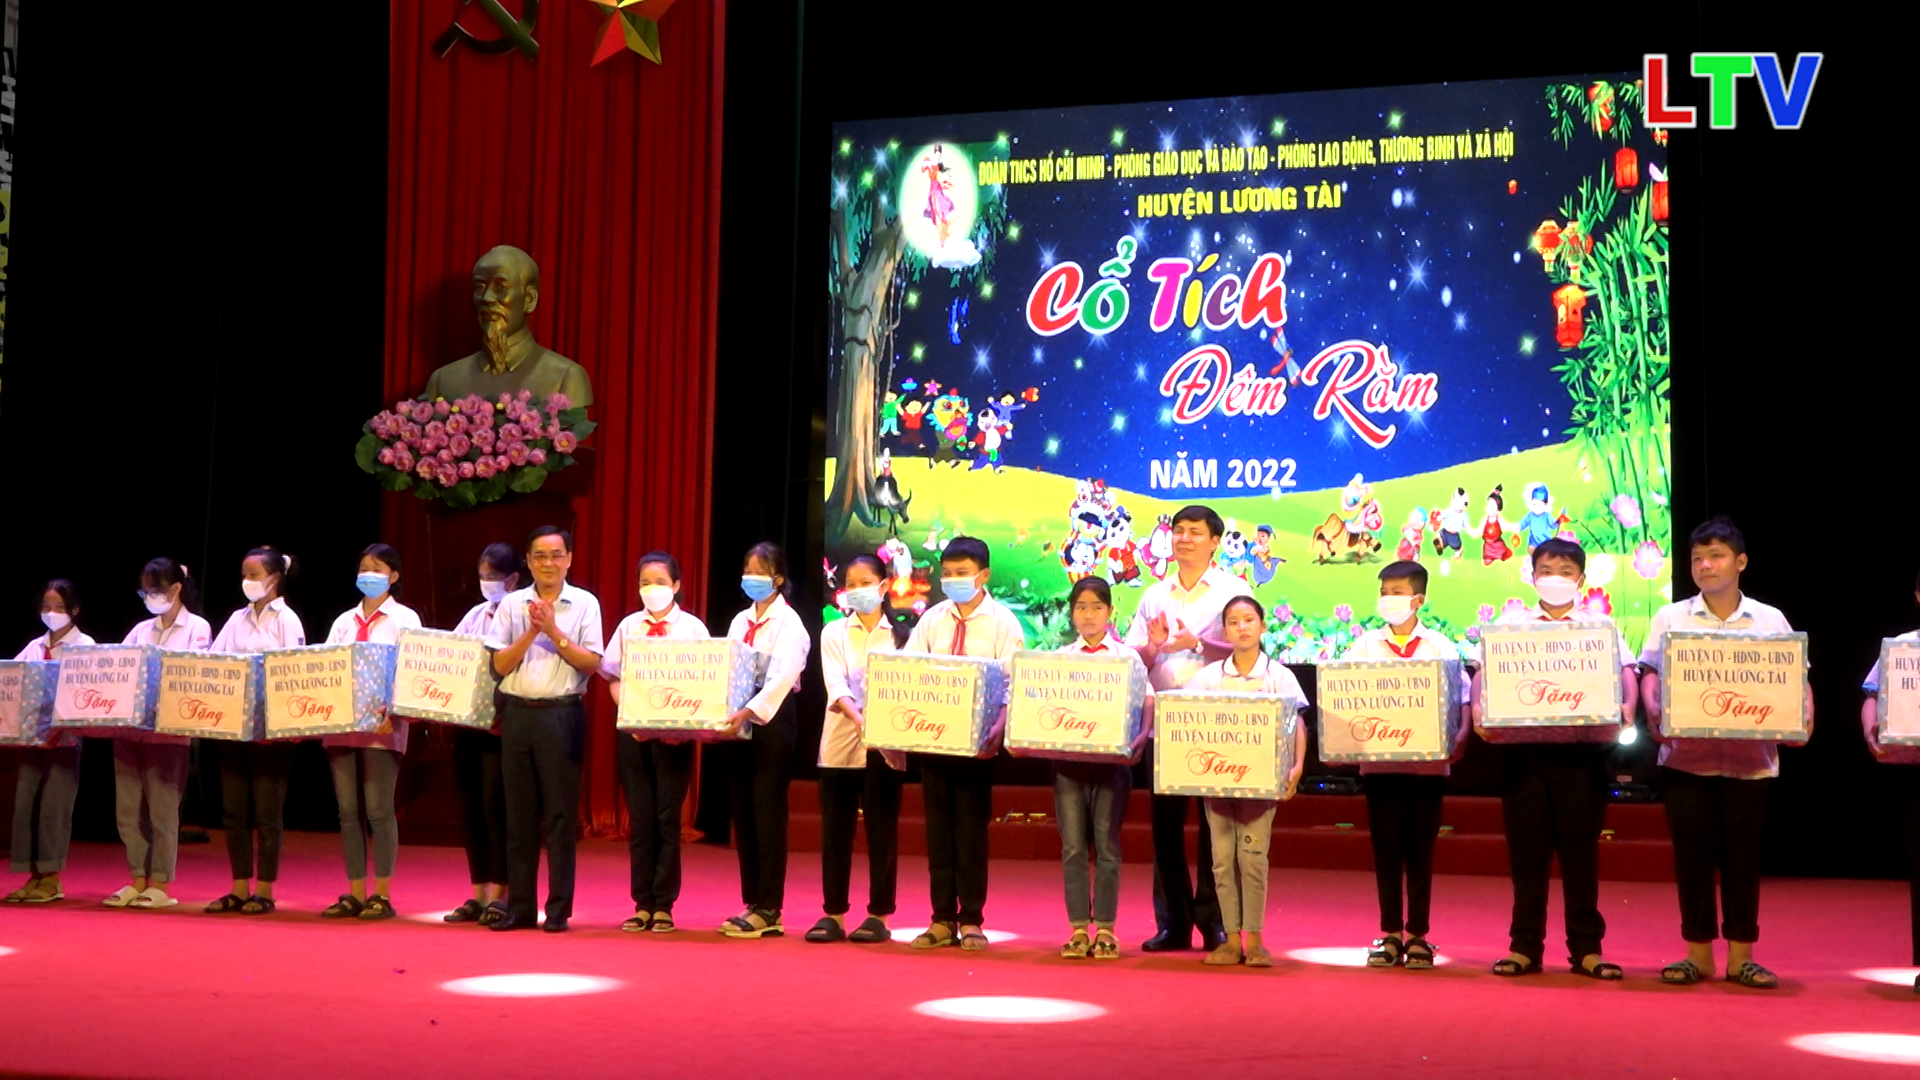 Lương Tài tổ chức đêm hội trăng rằm năm 2022.mp4